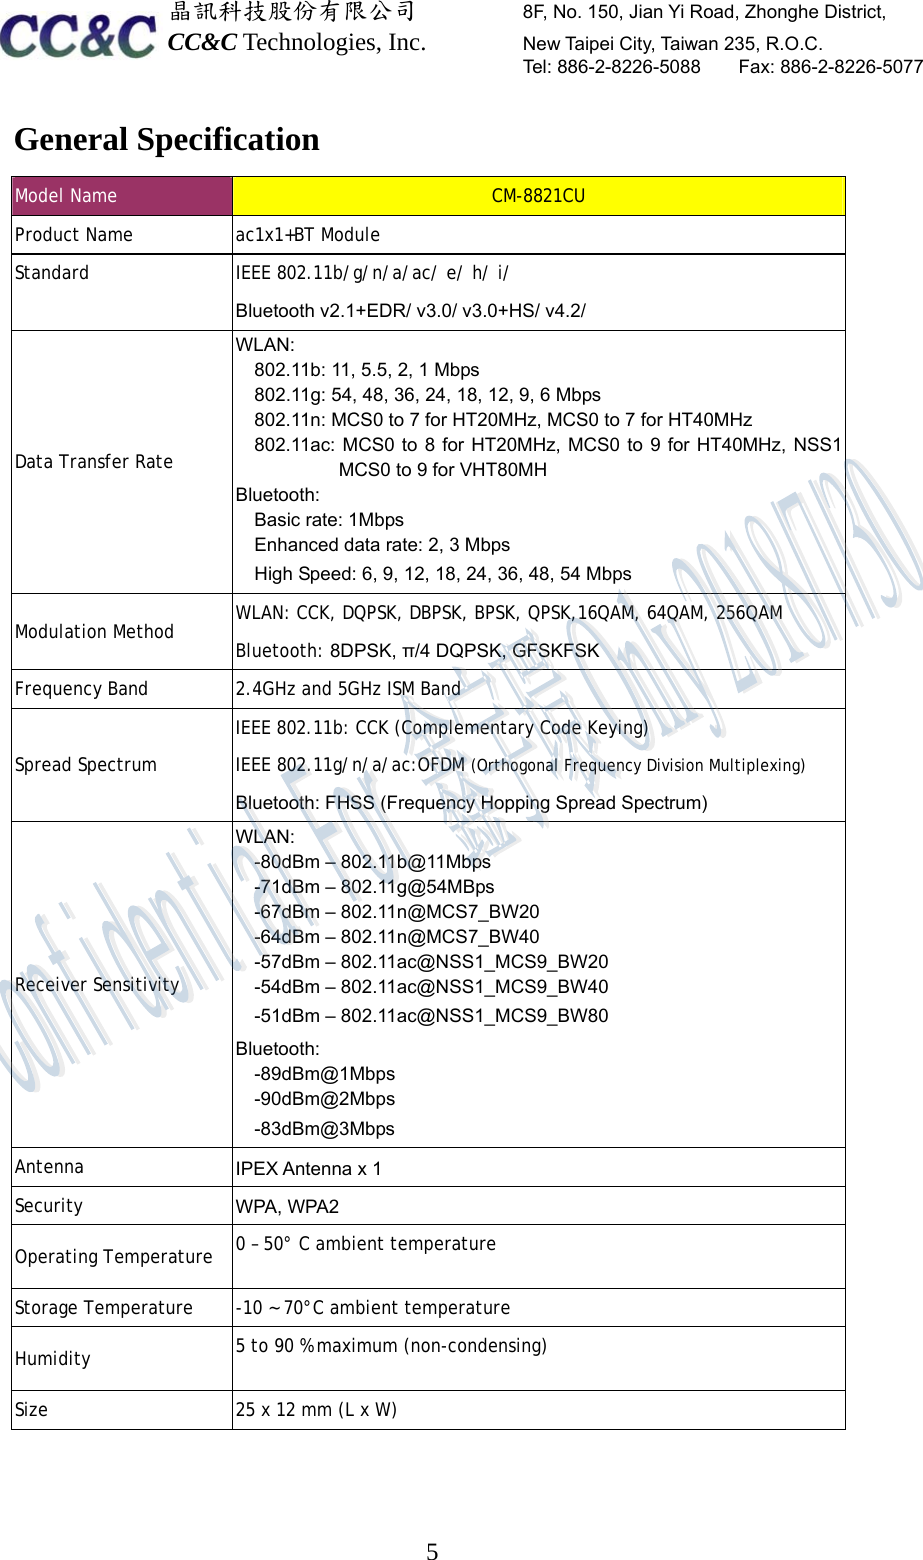  晶訊科技股份有限公司         8F, No. 150, Jian Yi Road, Zhonghe District,   CC&amp;C Technologies, Inc.        New Taipei City, Taiwan 235, R.O.C.   Tel: 886-2-8226-5088    Fax: 886-2-8226-5077  5General Specification Model Name  CM-8821CU Product Name   ac1x1+BT Module Standard   IEEE 802.11b/g/n/a/ac/ e/ h/ i/ Bluetooth v2.1+EDR/ v3.0/ v3.0+HS/ v4.2/ Data Transfer Rate  WLAN: 802.11b: 11, 5.5, 2, 1 Mbps 802.11g: 54, 48, 36, 24, 18, 12, 9, 6 Mbps 802.11n: MCS0 to 7 for HT20MHz, MCS0 to 7 for HT40MHz 802.11ac: MCS0 to 8 for HT20MHz, MCS0 to 9 for HT40MHz, NSS1 MCS0 to 9 for VHT80MH Bluetooth:  Basic rate: 1Mbps Enhanced data rate: 2, 3 Mbps High Speed: 6, 9, 12, 18, 24, 36, 48, 54 Mbps Modulation Method    WLAN: CCK, DQPSK, DBPSK, BPSK, QPSK,16QAM, 64QAM, 256QAM Bluetooth: 8DPSK, π/4 DQPSK, GFSKFSK Frequency Band   2.4GHz and 5GHz ISM Band Spread Spectrum IEEE 802.11b: CCK (Complementary Code Keying) IEEE 802.11g/n/a/ac:OFDM (Orthogonal Frequency Division Multiplexing) Bluetooth: FHSS (Frequency Hopping Spread Spectrum) Receiver Sensitivity  WLAN:-80dBm – 802.11b@11Mbps-71dBm – 802.11g@54MBps-67dBm – 802.11n@MCS7_BW20-64dBm – 802.11n@MCS7_BW40-57dBm – 802.11ac@NSS1_MCS9_BW20-54dBm – 802.11ac@NSS1_MCS9_BW40-51dBm – 802.11ac@NSS1_MCS9_BW80Bluetooth:-89dBm@1Mbps-90dBm@2Mbps-83dBm@3MbpsAntenna  IPEX Antenna x 1Security  WPA, WPA2Operating Temperature   0 – 50° C ambient temperatureStorage Temperature   -10 ~ 70°C ambient temperatureHumidity   5 to 90 % maximum (non-condensing)Size  25 x 12 mm (L x W)    